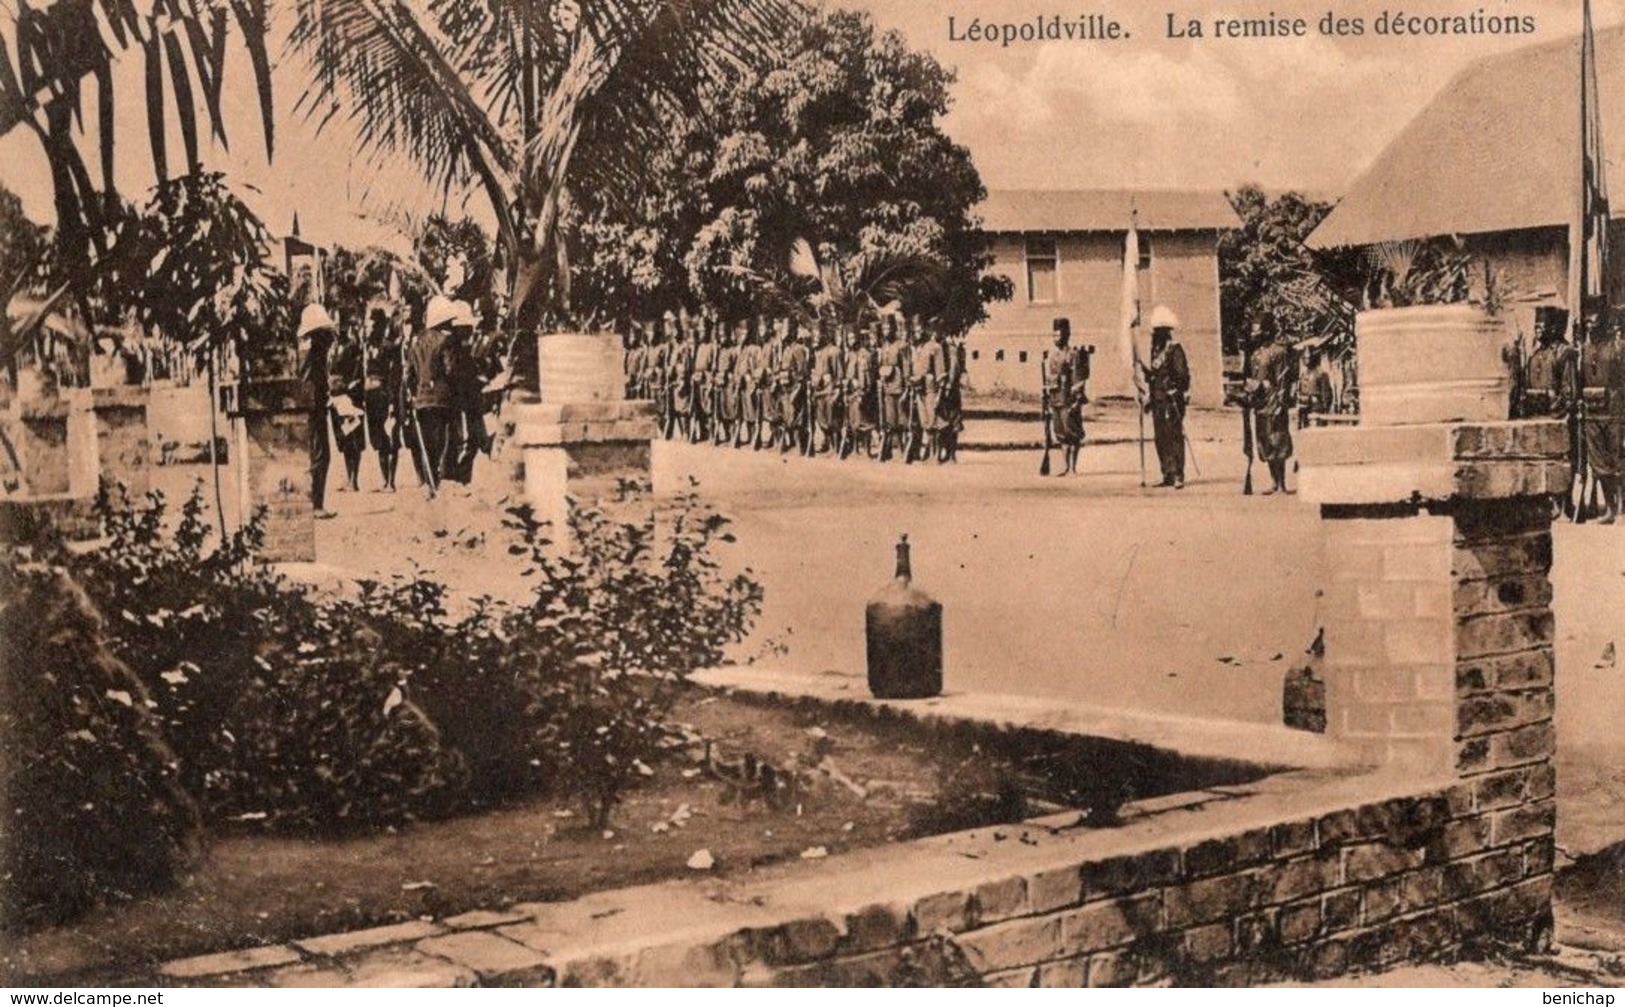 CPA CONGO BELGE - LEOPOLDVILLE - REMISE DES DECORATIONS - SOLDATS CONGOLAIS - NEUVE - NON CIRCULEE. - Kinshasa - Leopoldville (Leopoldstadt)